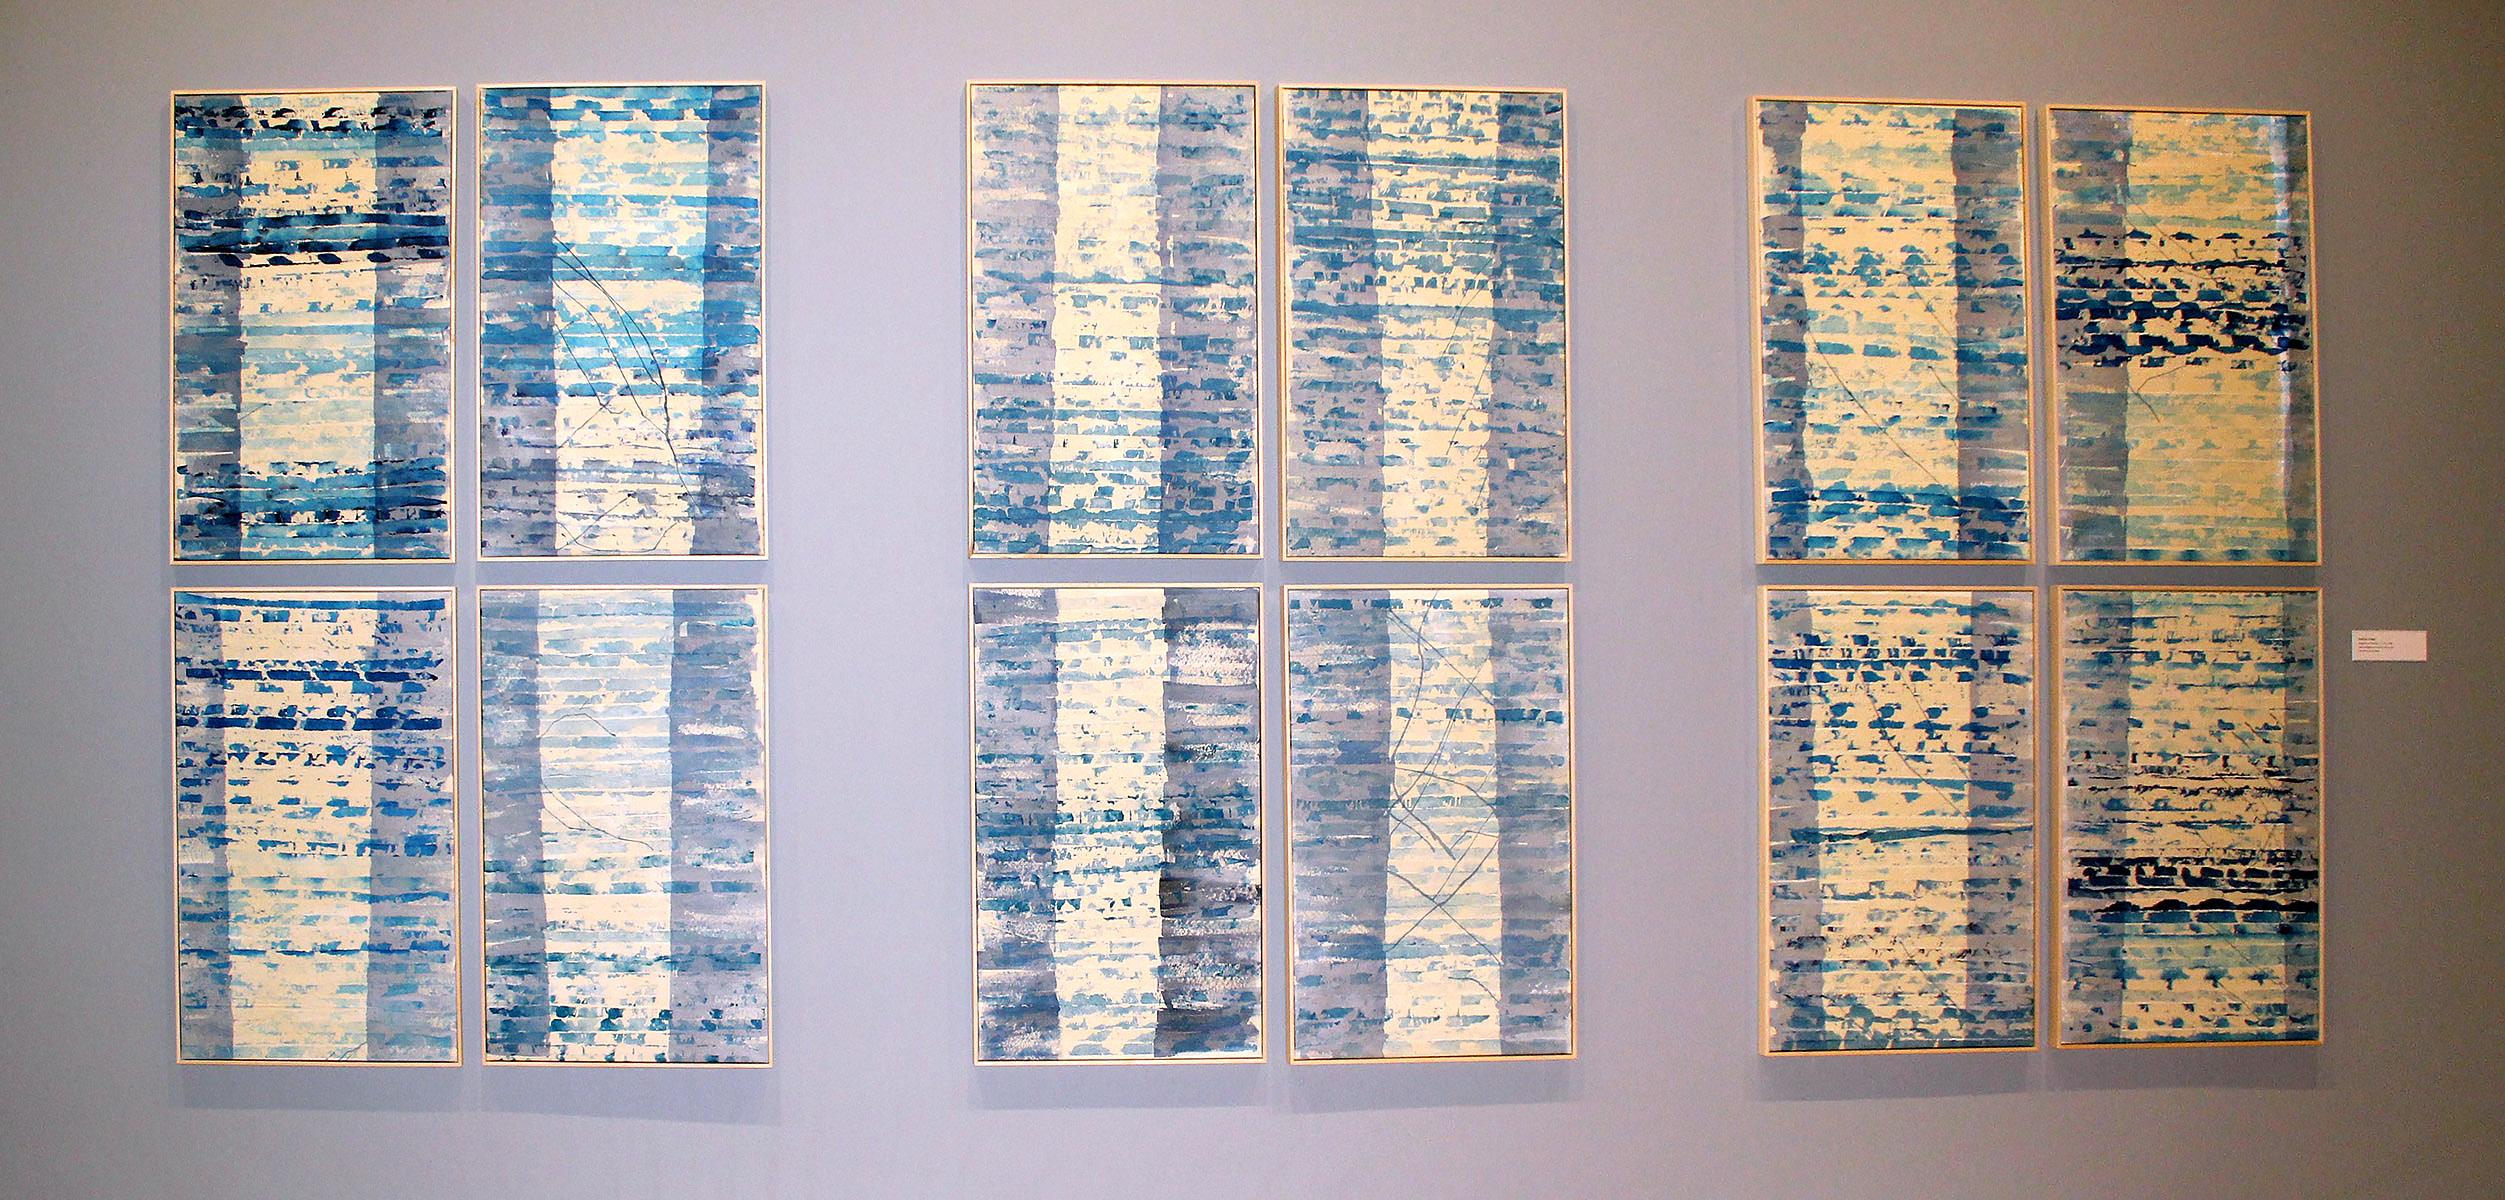 Ensemble de 12 peintures abstraites contemporaines encadrées en bleu et blanc de la collection du musée